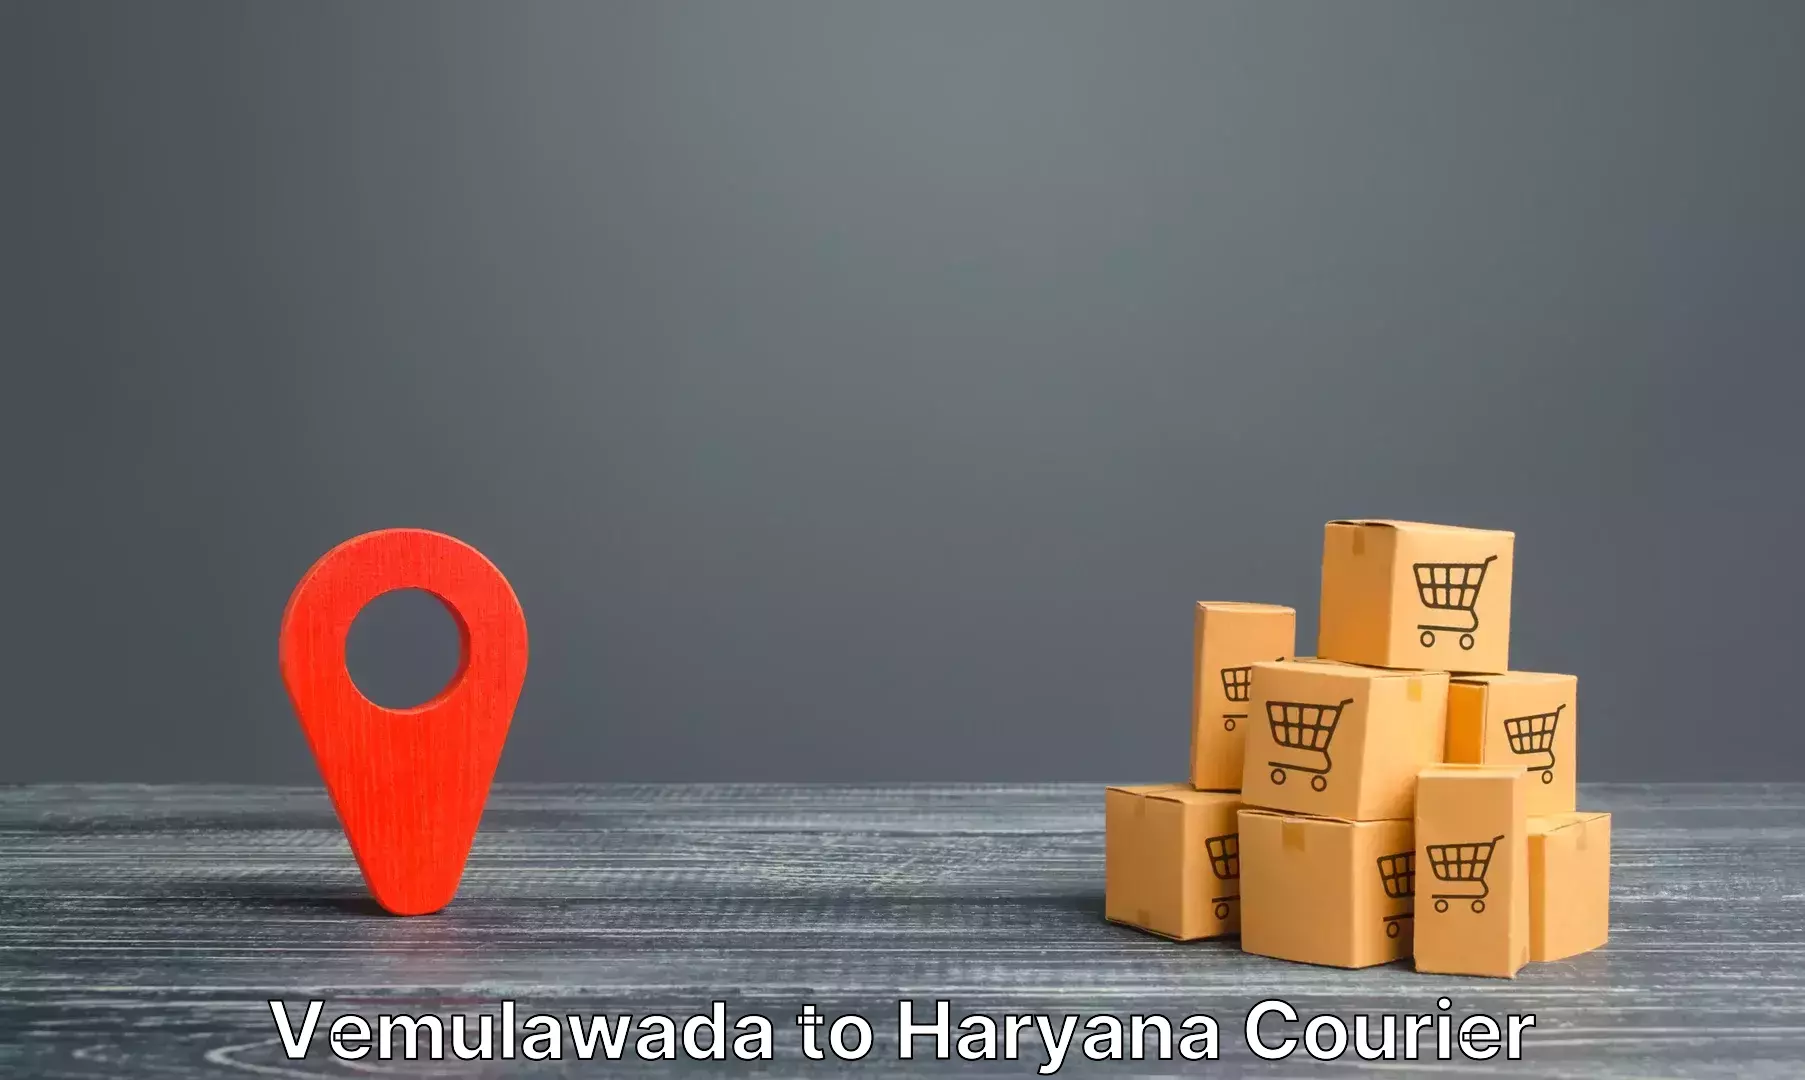 Luggage transport company Vemulawada to Chaudhary Charan Singh Haryana Agricultural University Hisar